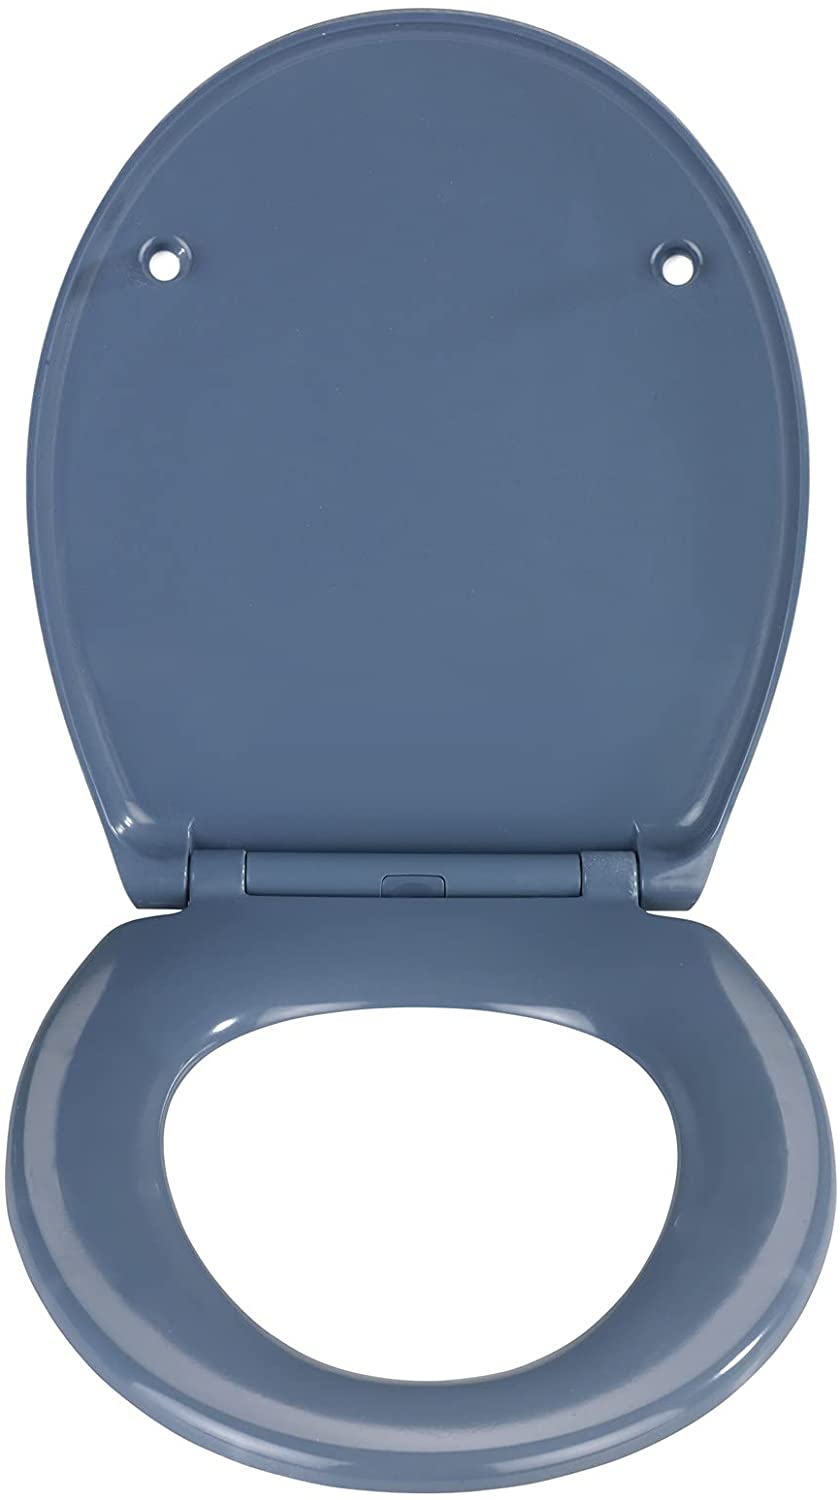 Premium WC-Sitz Samos Slate Blue - Antibakterieller Toiletten-Sitz mit Absenkautomatik, rostfreie Fix-Clip Hygiene Edelstahlbefestigung, Duroplast, 37.5 x 44.5 cm, Dunkelblau